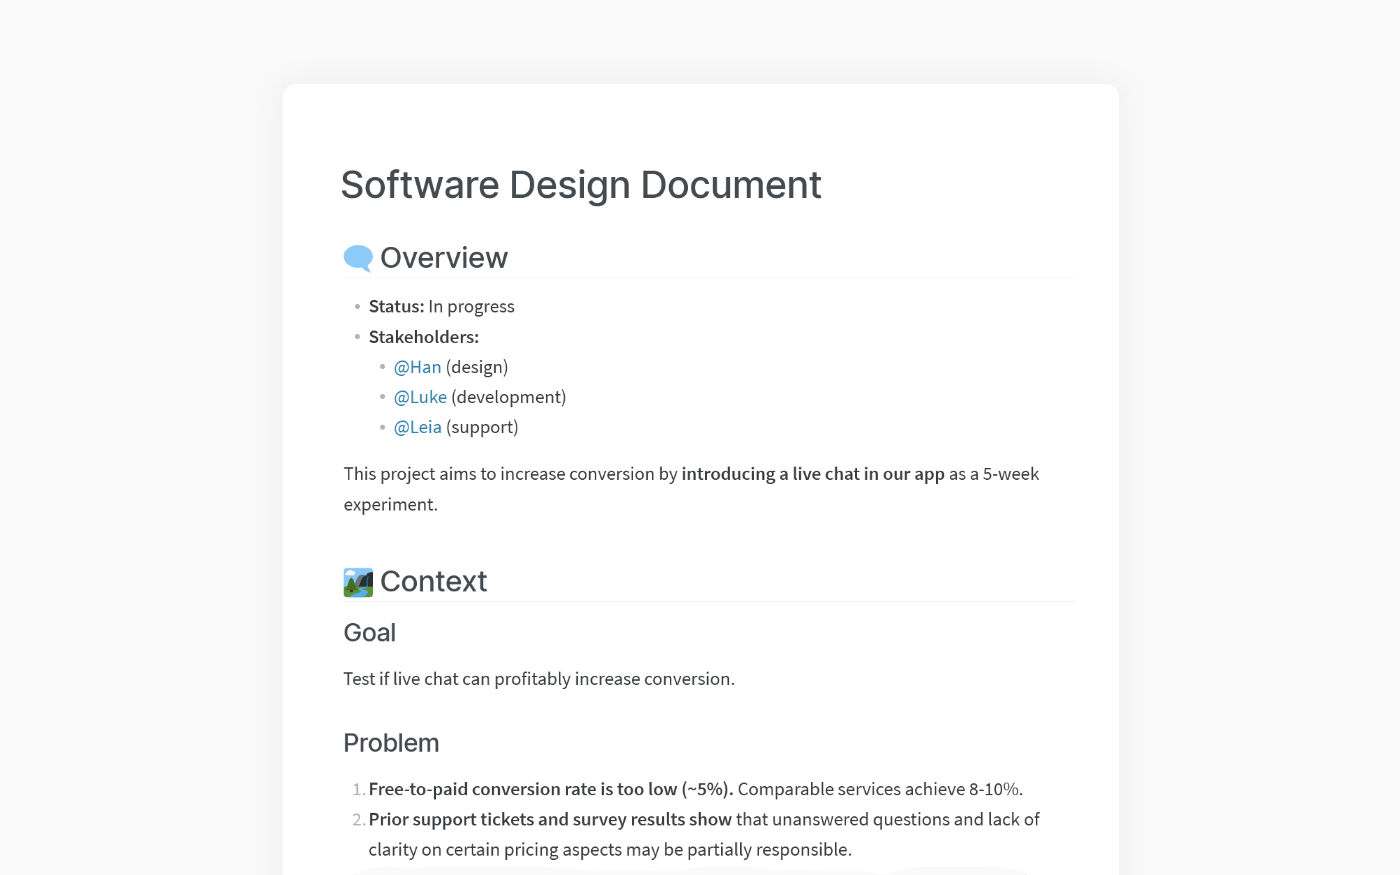 How to Write a Software Design Document (SDD)